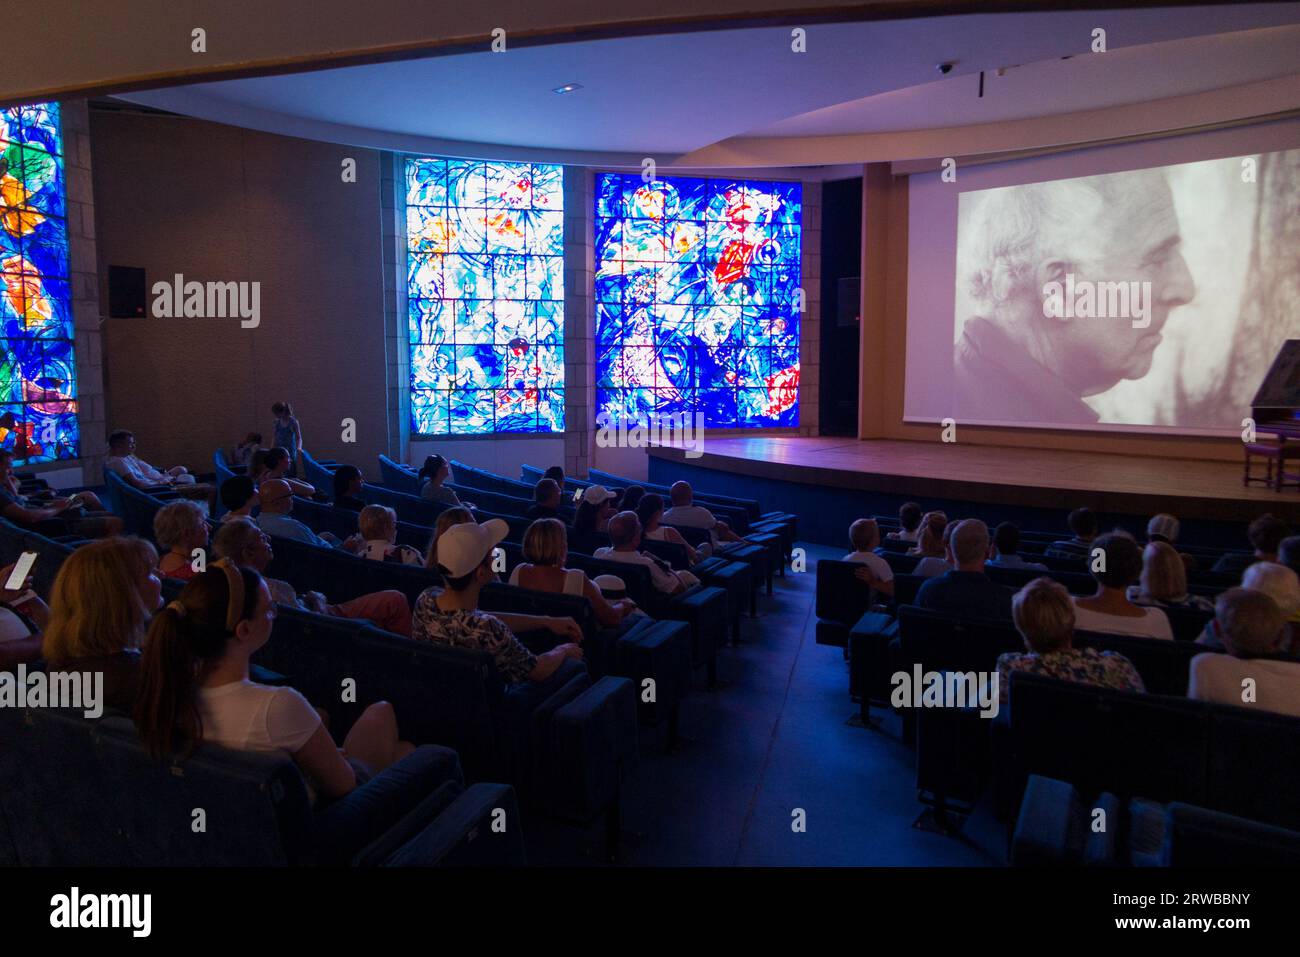 Il cortometraggio/video di Marc Chagall nel cinema per visitatori del Musée National Marc Chagall. Bello. Francia. I pannelli delle finestre in vetro colorato sono illuminati accanto allo schermo. (135) Foto Stock